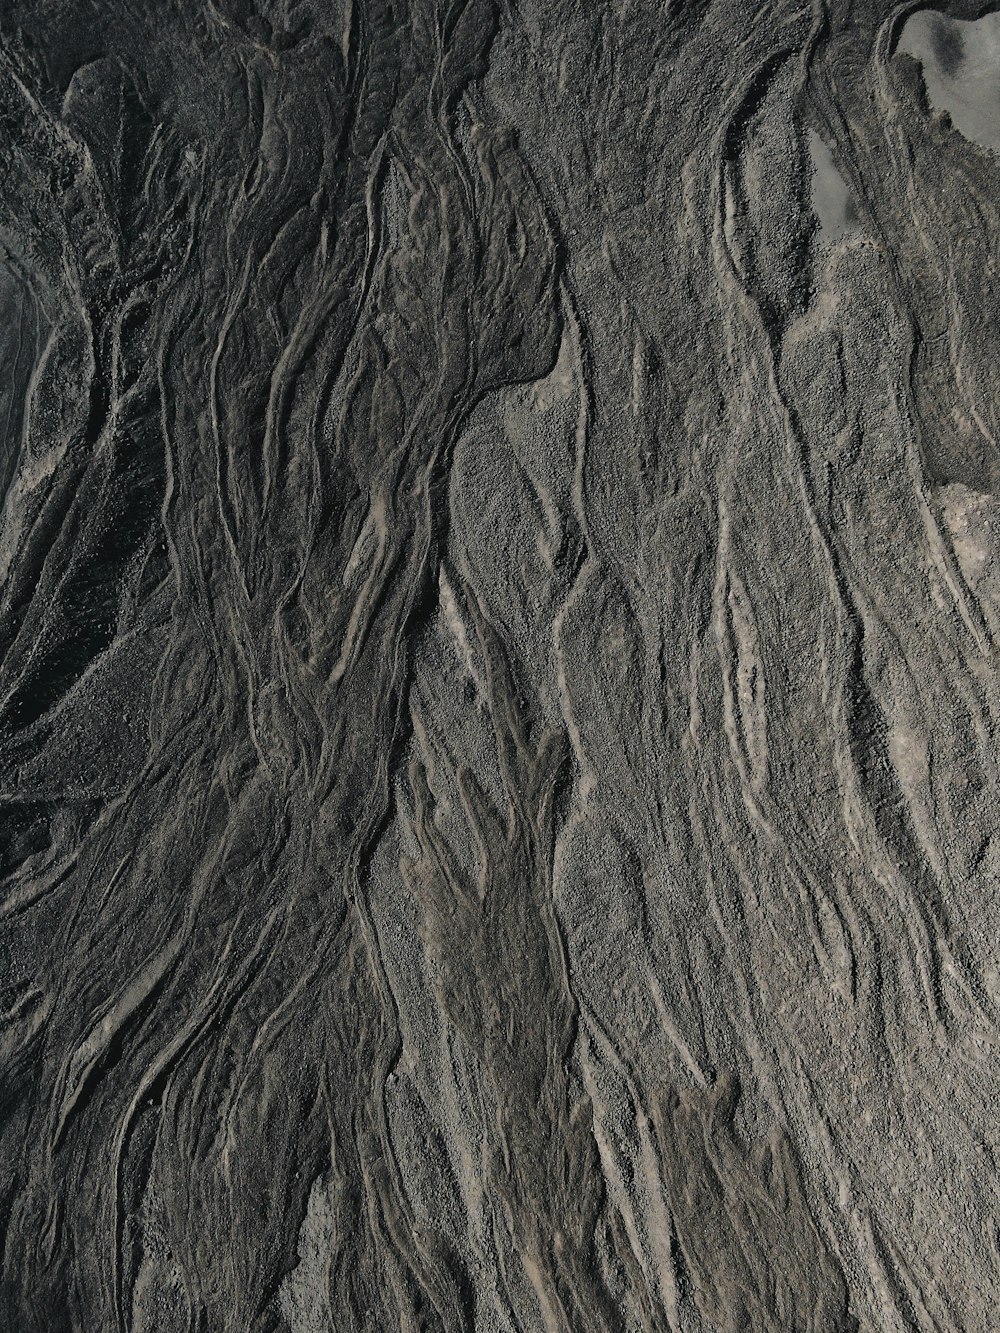 Formation rocheuse brune et noire